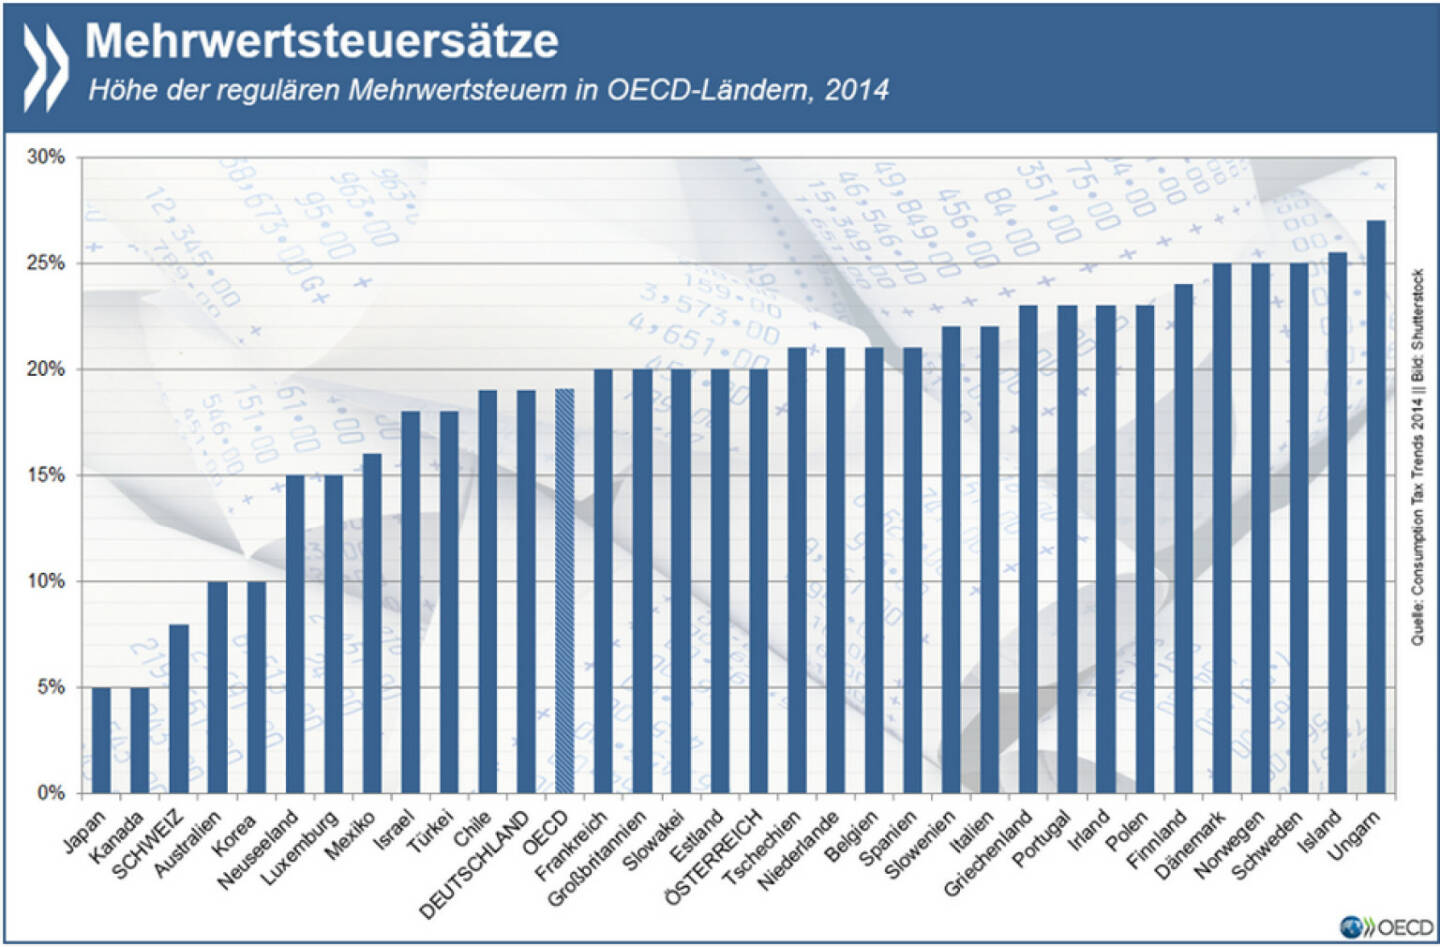 Was ist der Mehrwert? 21 von 33 erfassten OECD-Ländern haben ihren Mehrwertsteuersatz seit 2009 mindestens einmal angehoben. Vor 2009 lag die Steuer nur in vier Ländern bei über 22%, jetzt sind es zehn.
Mehr zum Thema Verbrauchsteuern unter: http://bit.ly/1gDfeY9